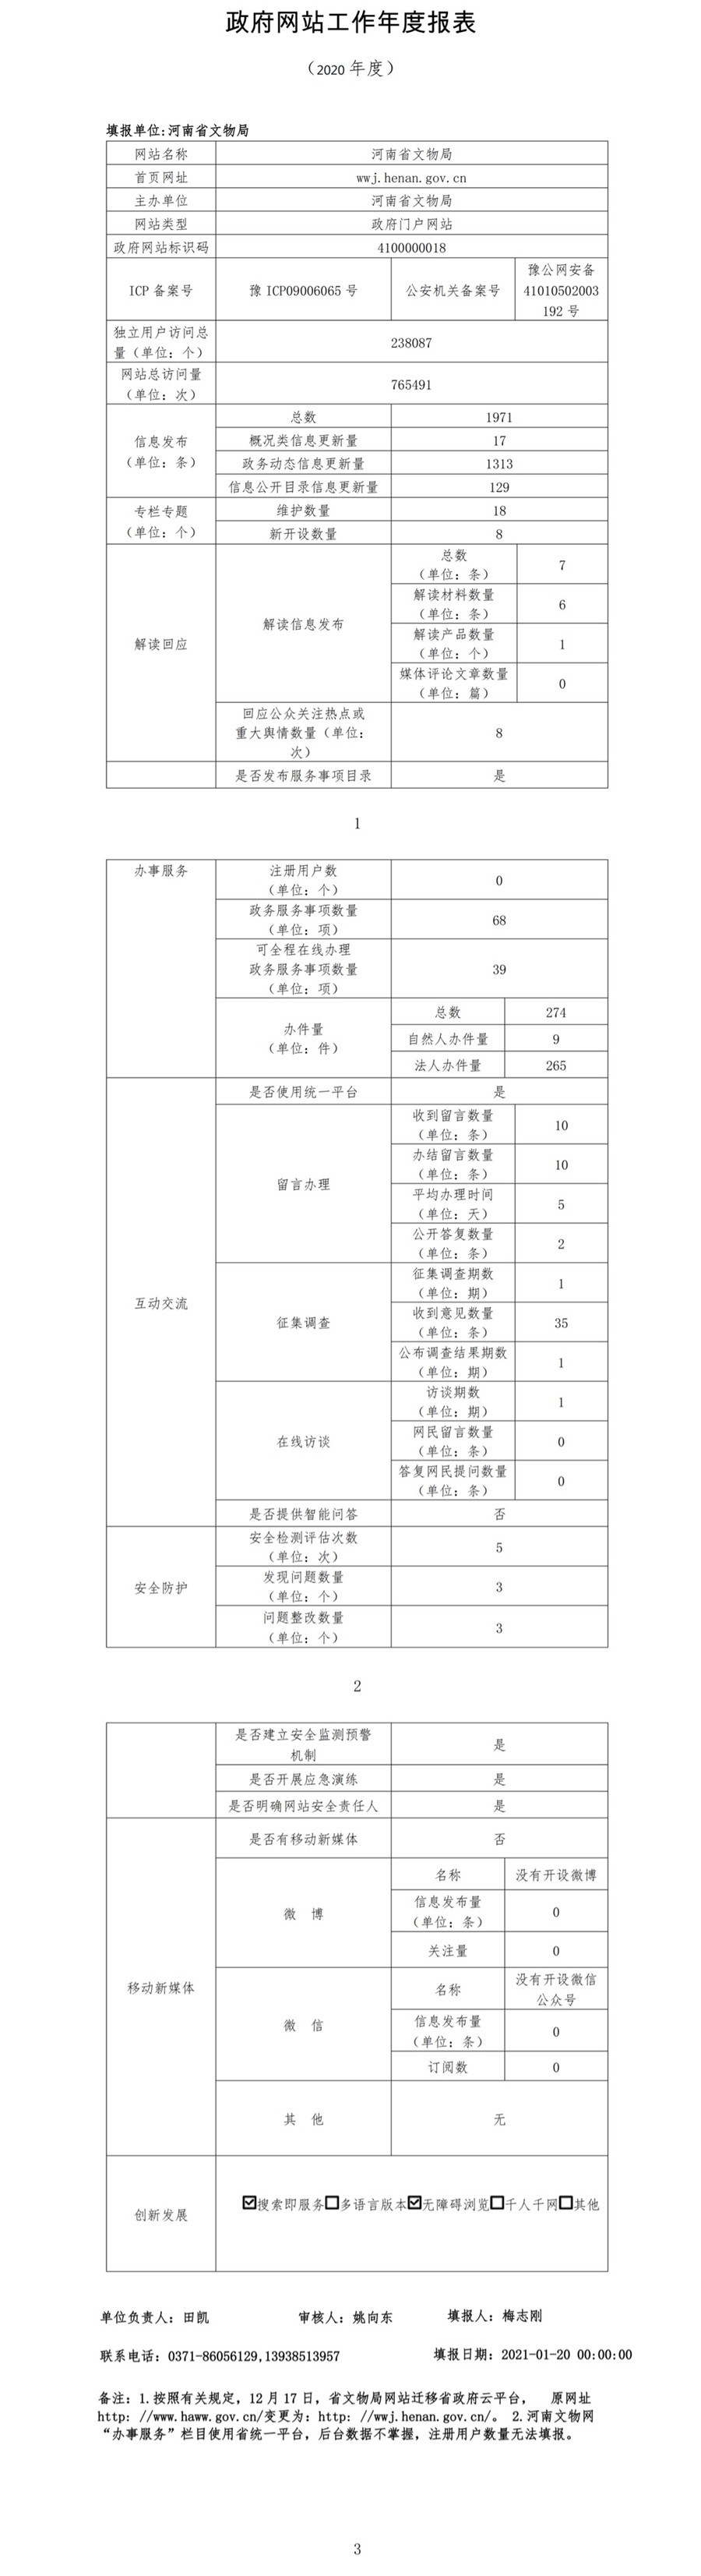 河南省文物局政府网站工作年度报表（2020年）